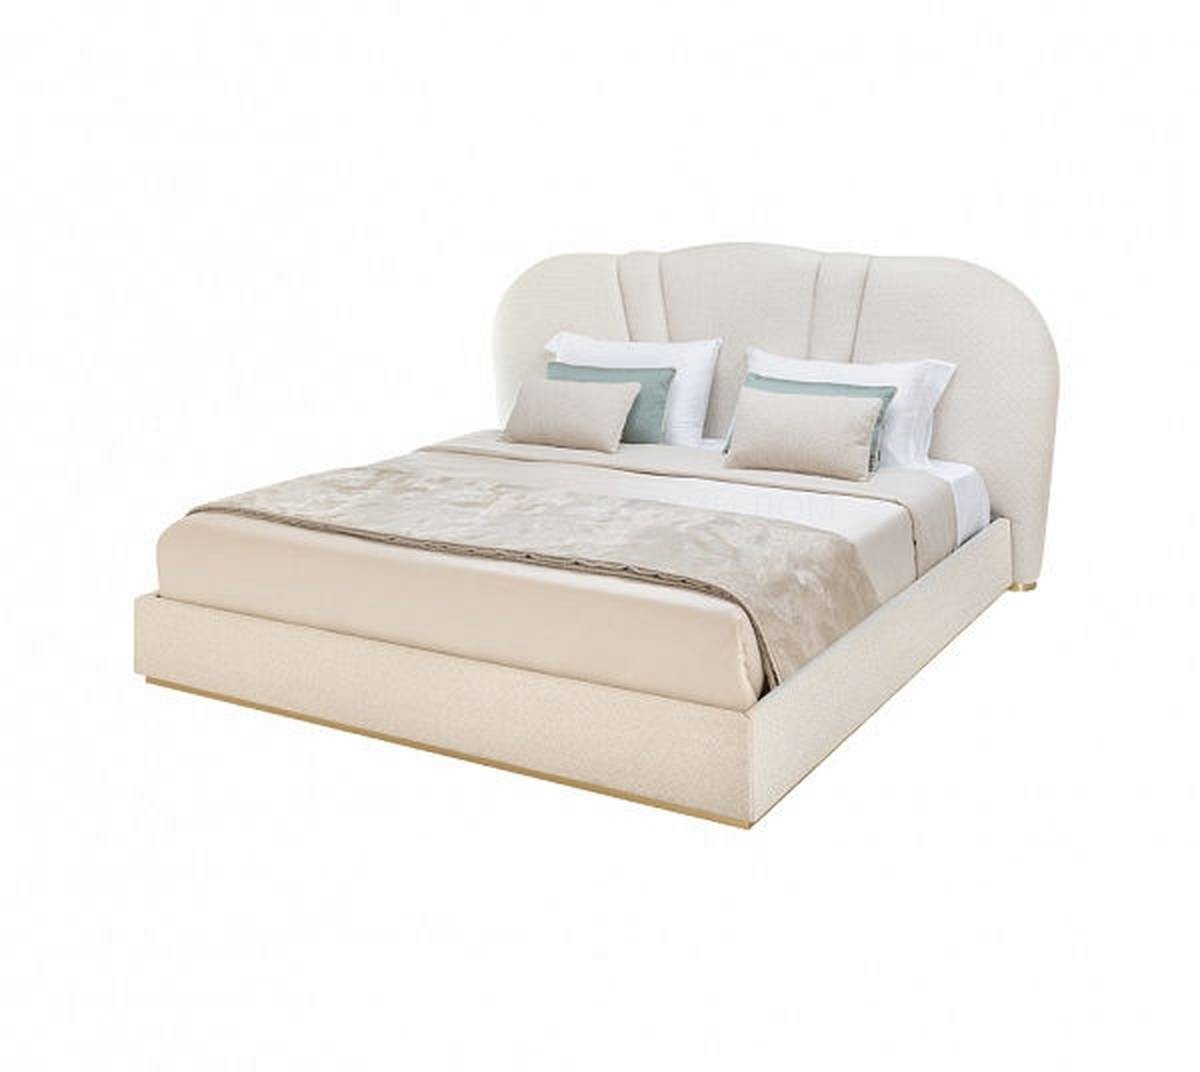 Кровать с мягким изголовьем Samara bed из Португалии фабрики FRATO